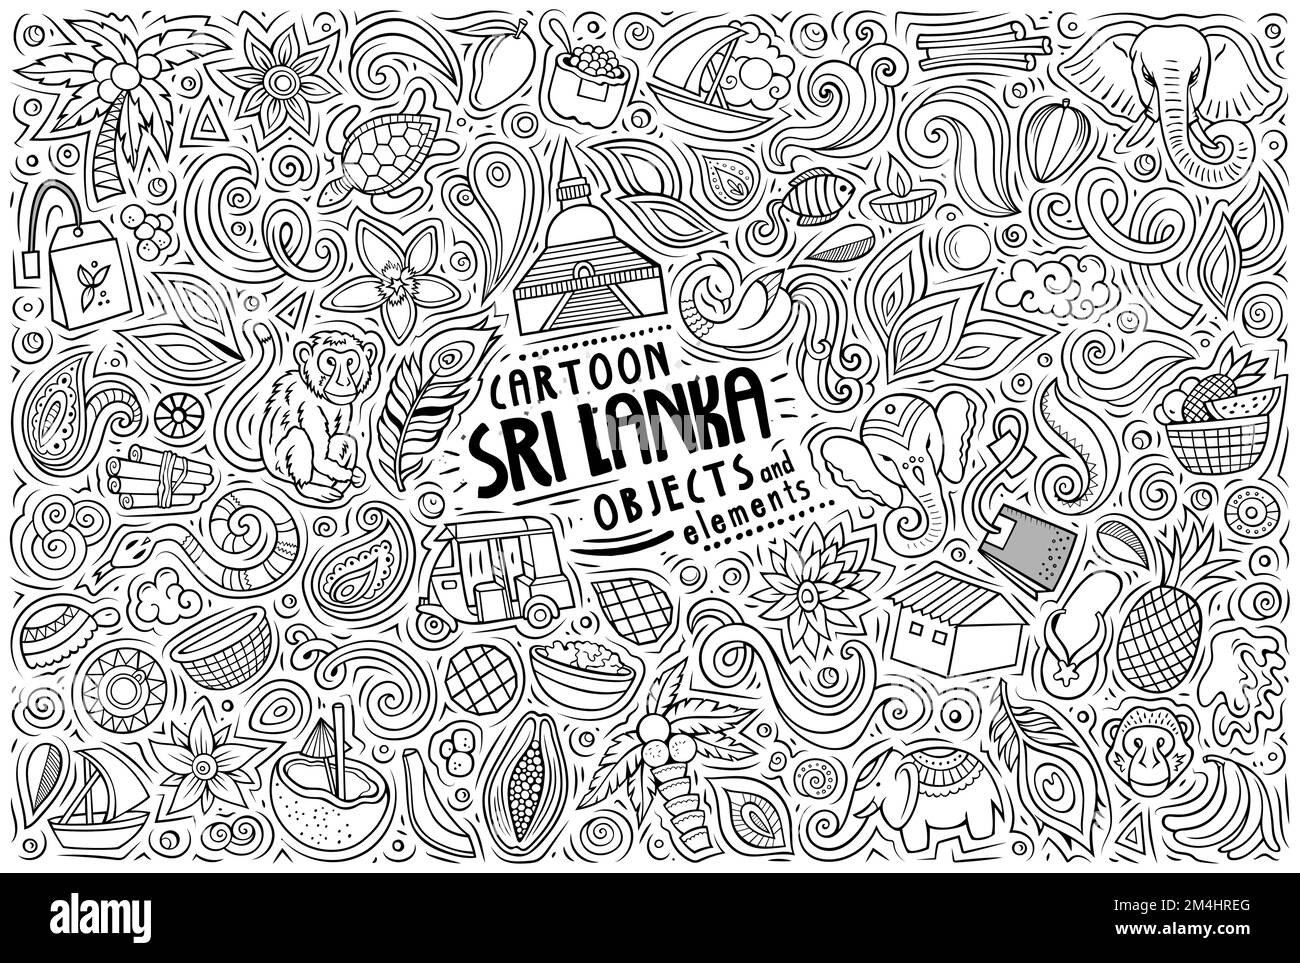 Cartoon vettore doodle insieme di simboli, oggetti e oggetti tradizionali Sri Lanka Illustrazione Vettoriale